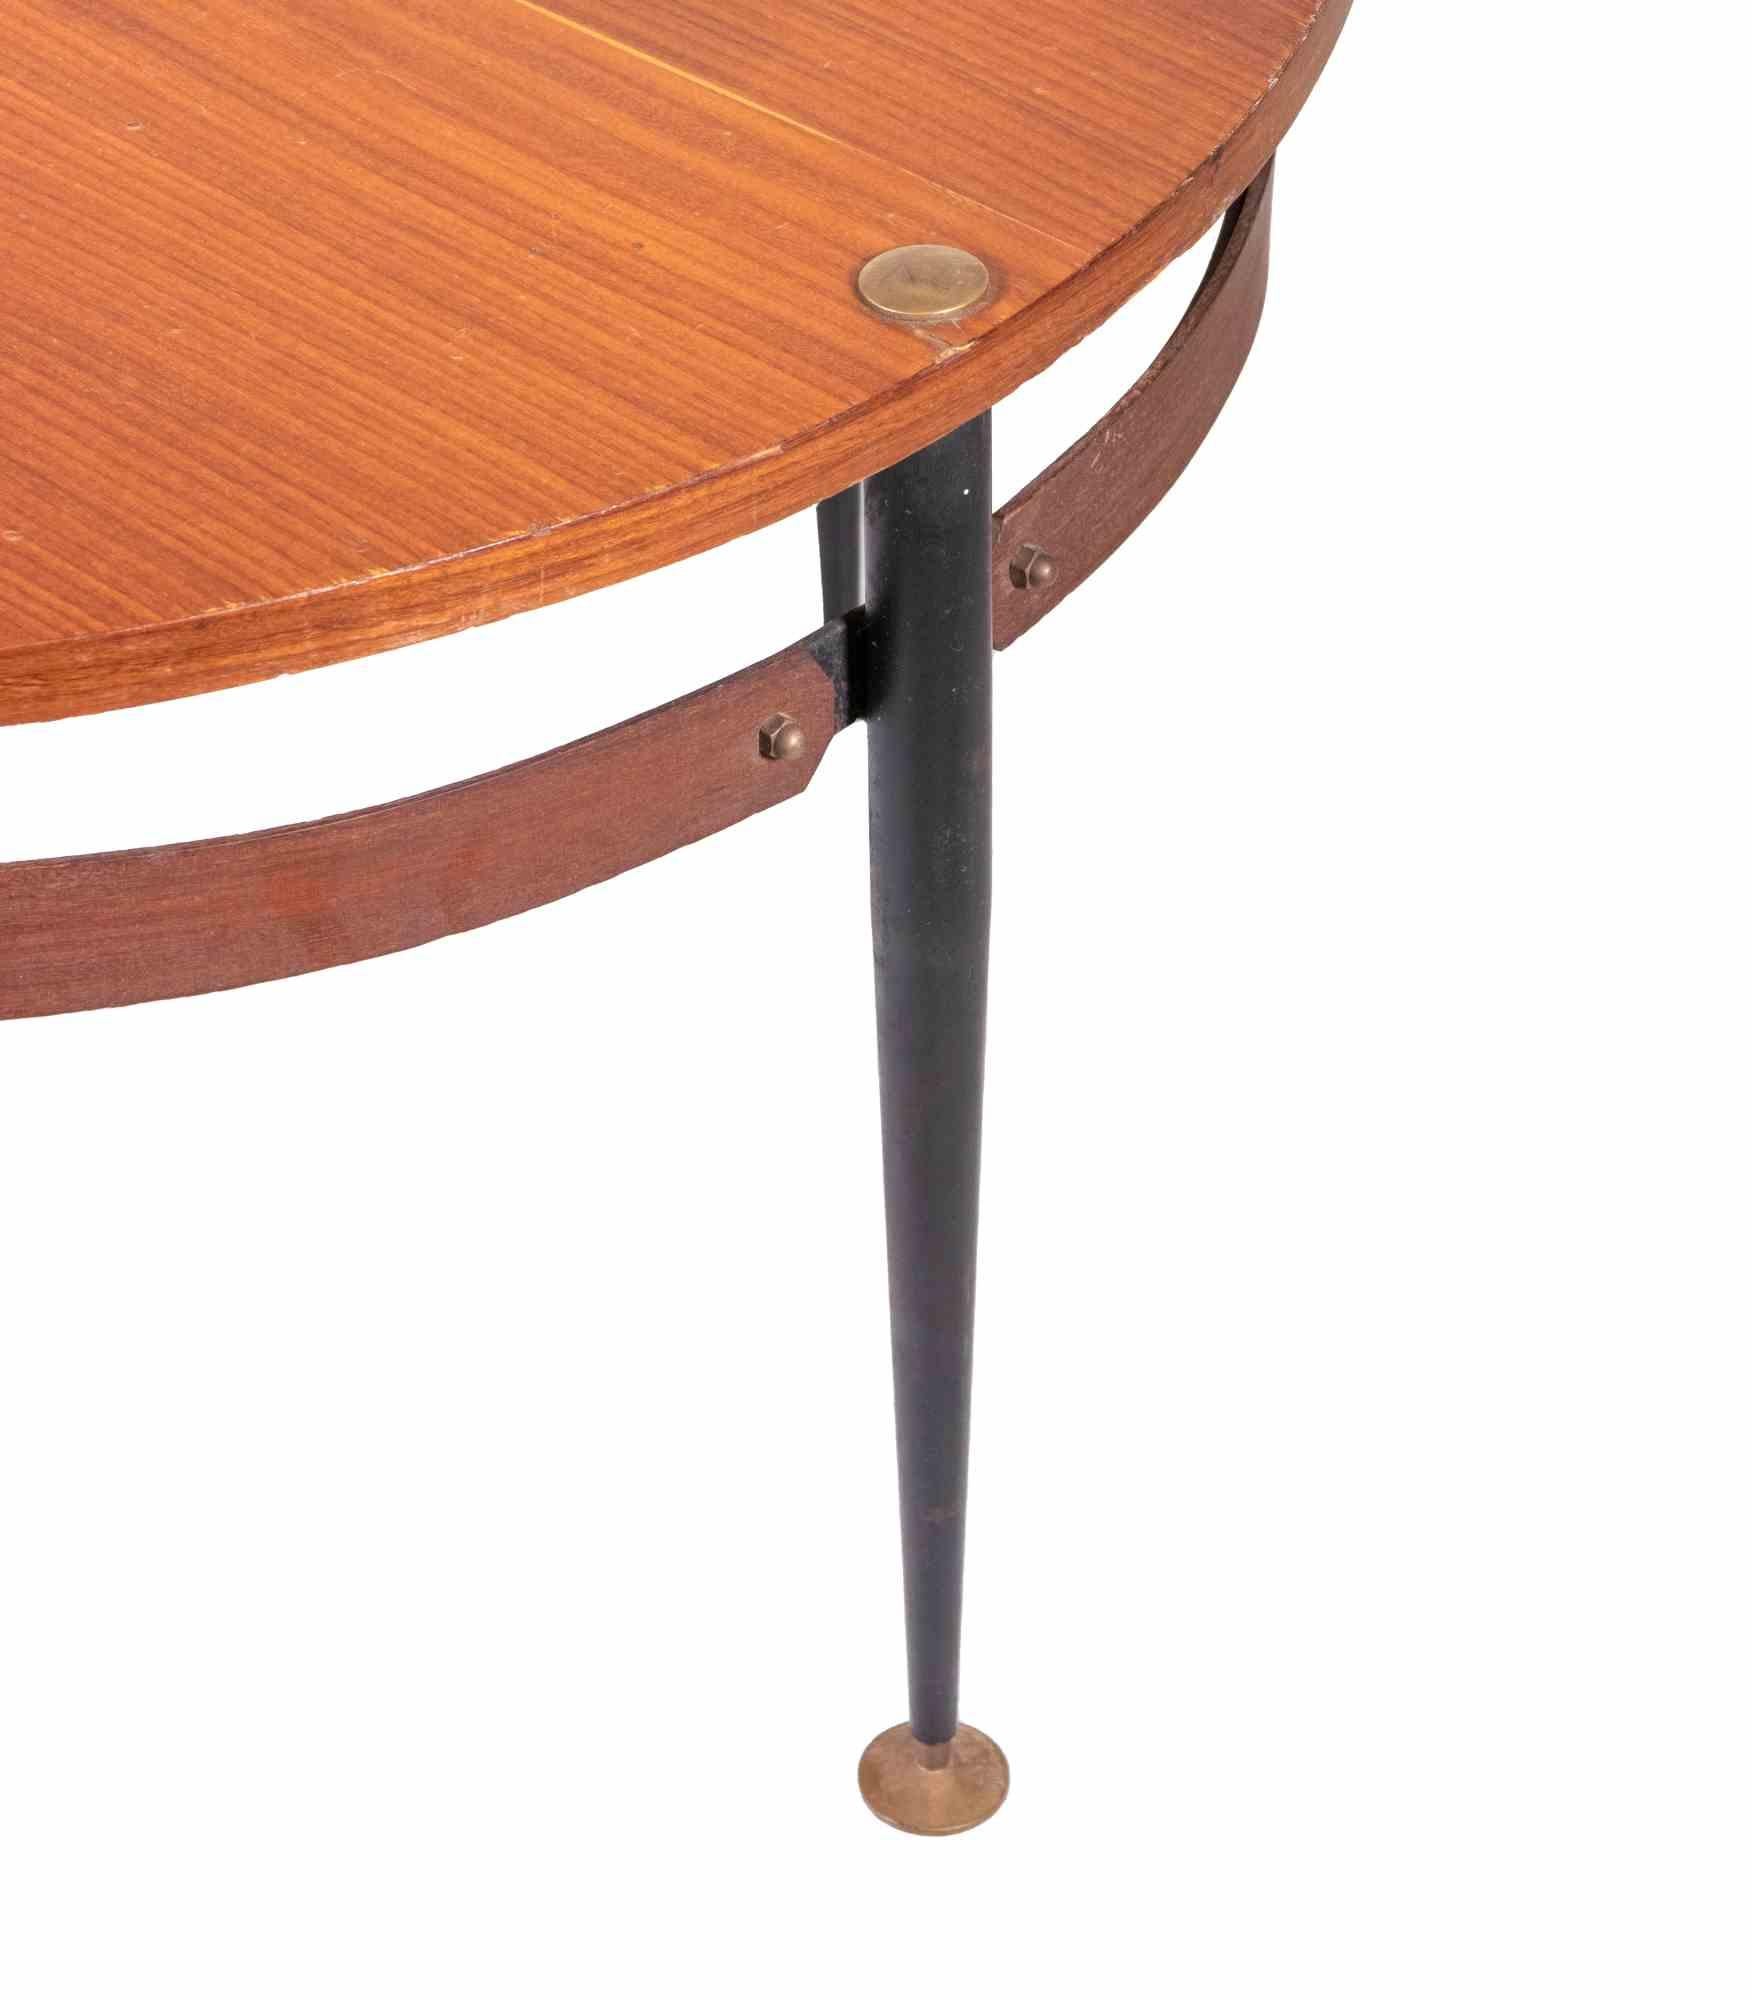 Der Couchtisch ist ein elegantes Design-Möbelstück aus Teakholz, das Mitte des 20. Jahrhunderts von Silvio Cavatorta entworfen wurde.

Tisch aus Holz, Metall und Messing mit einem raffinierten Design.
